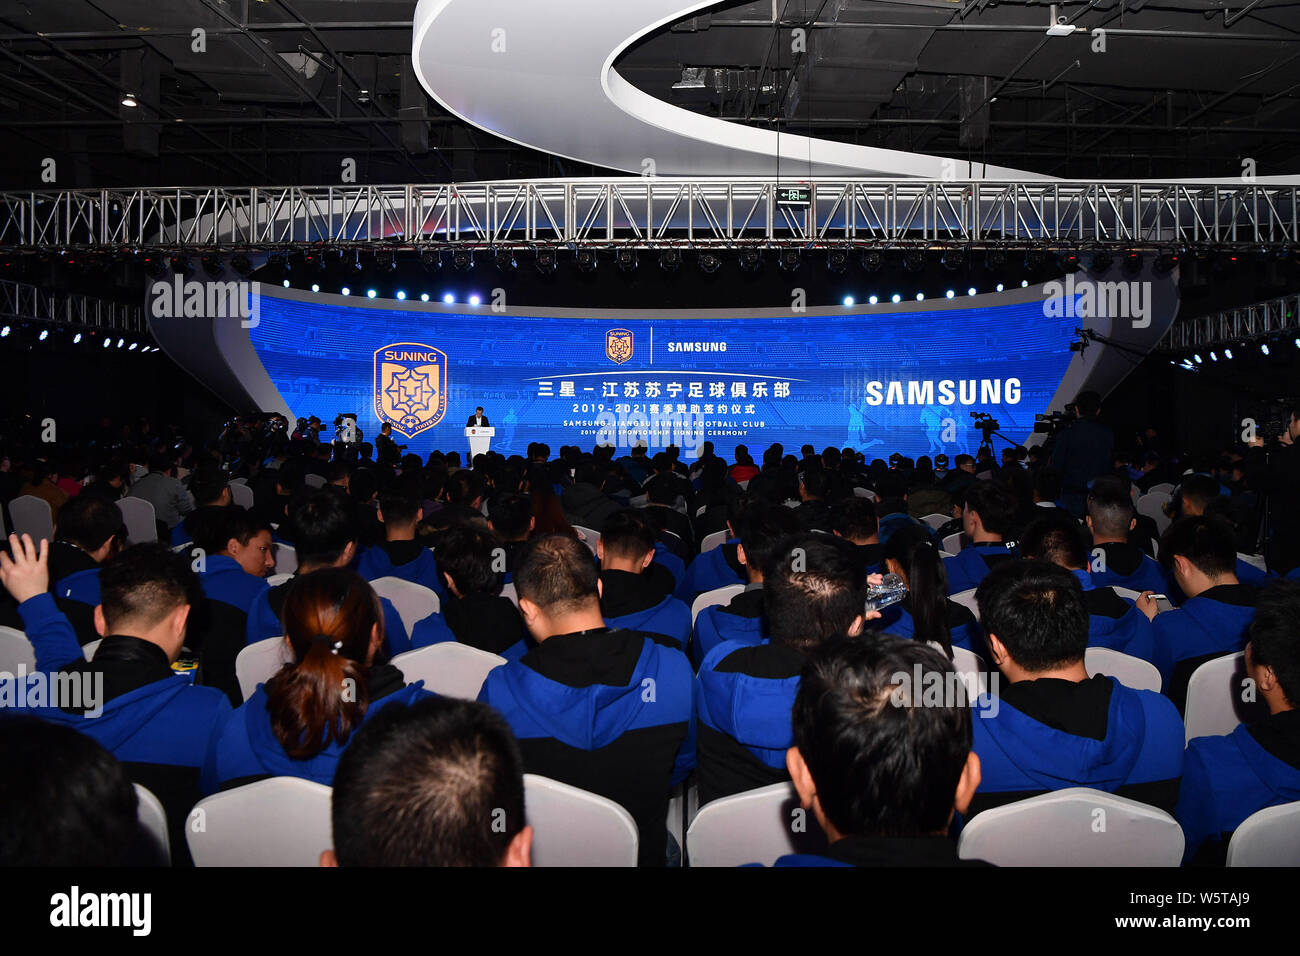 Samsung Fans Club